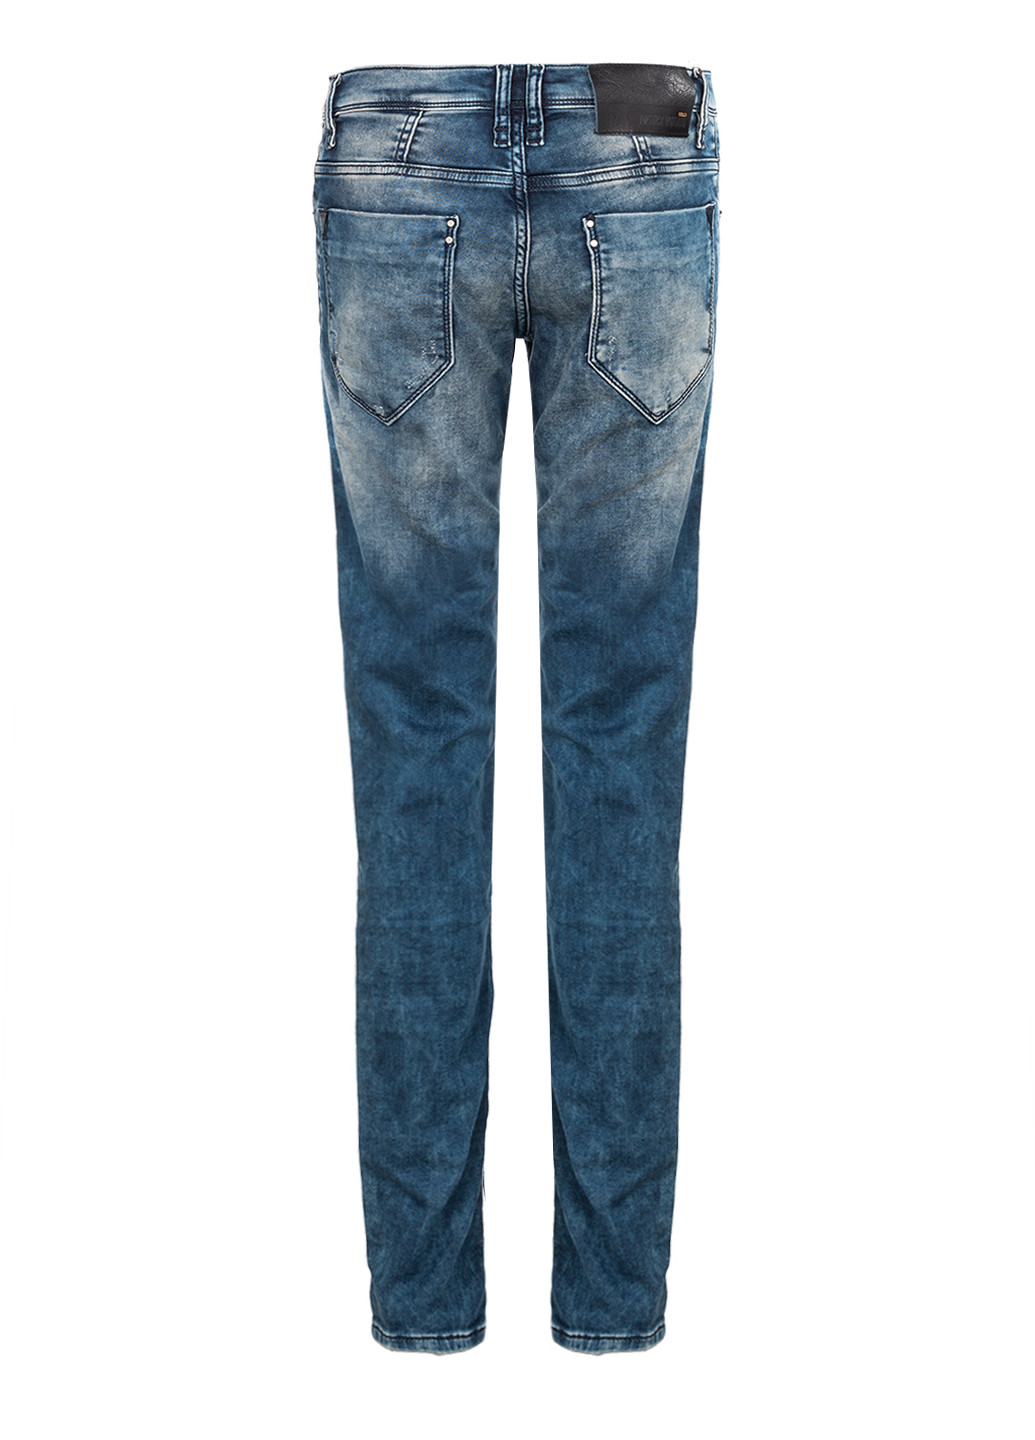 Синие демисезонные скинни мужские синие джинсы skinny Antony Morato